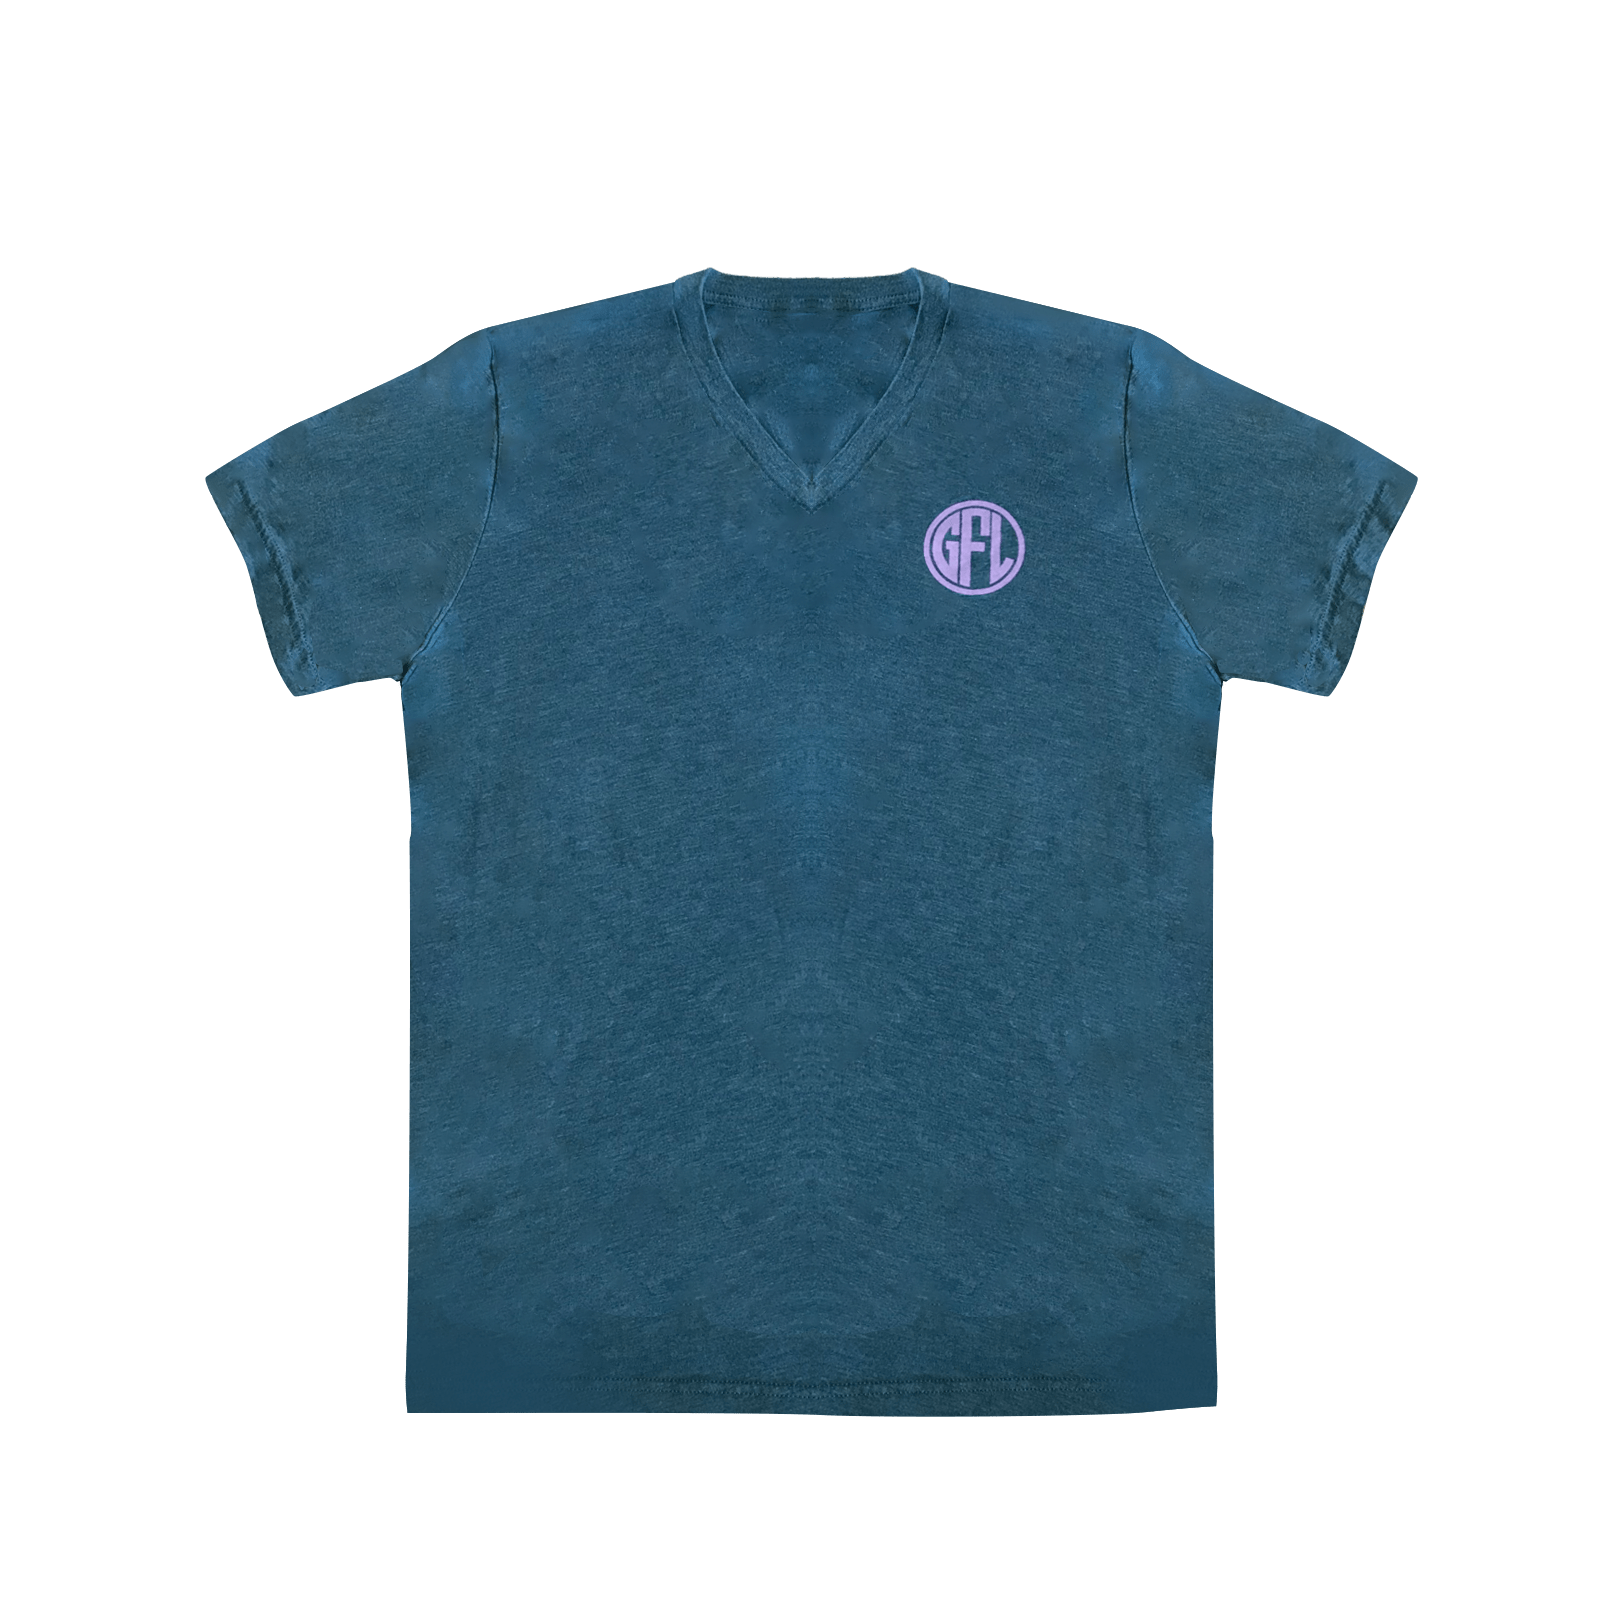 GFL Has Your Back T-Shirt